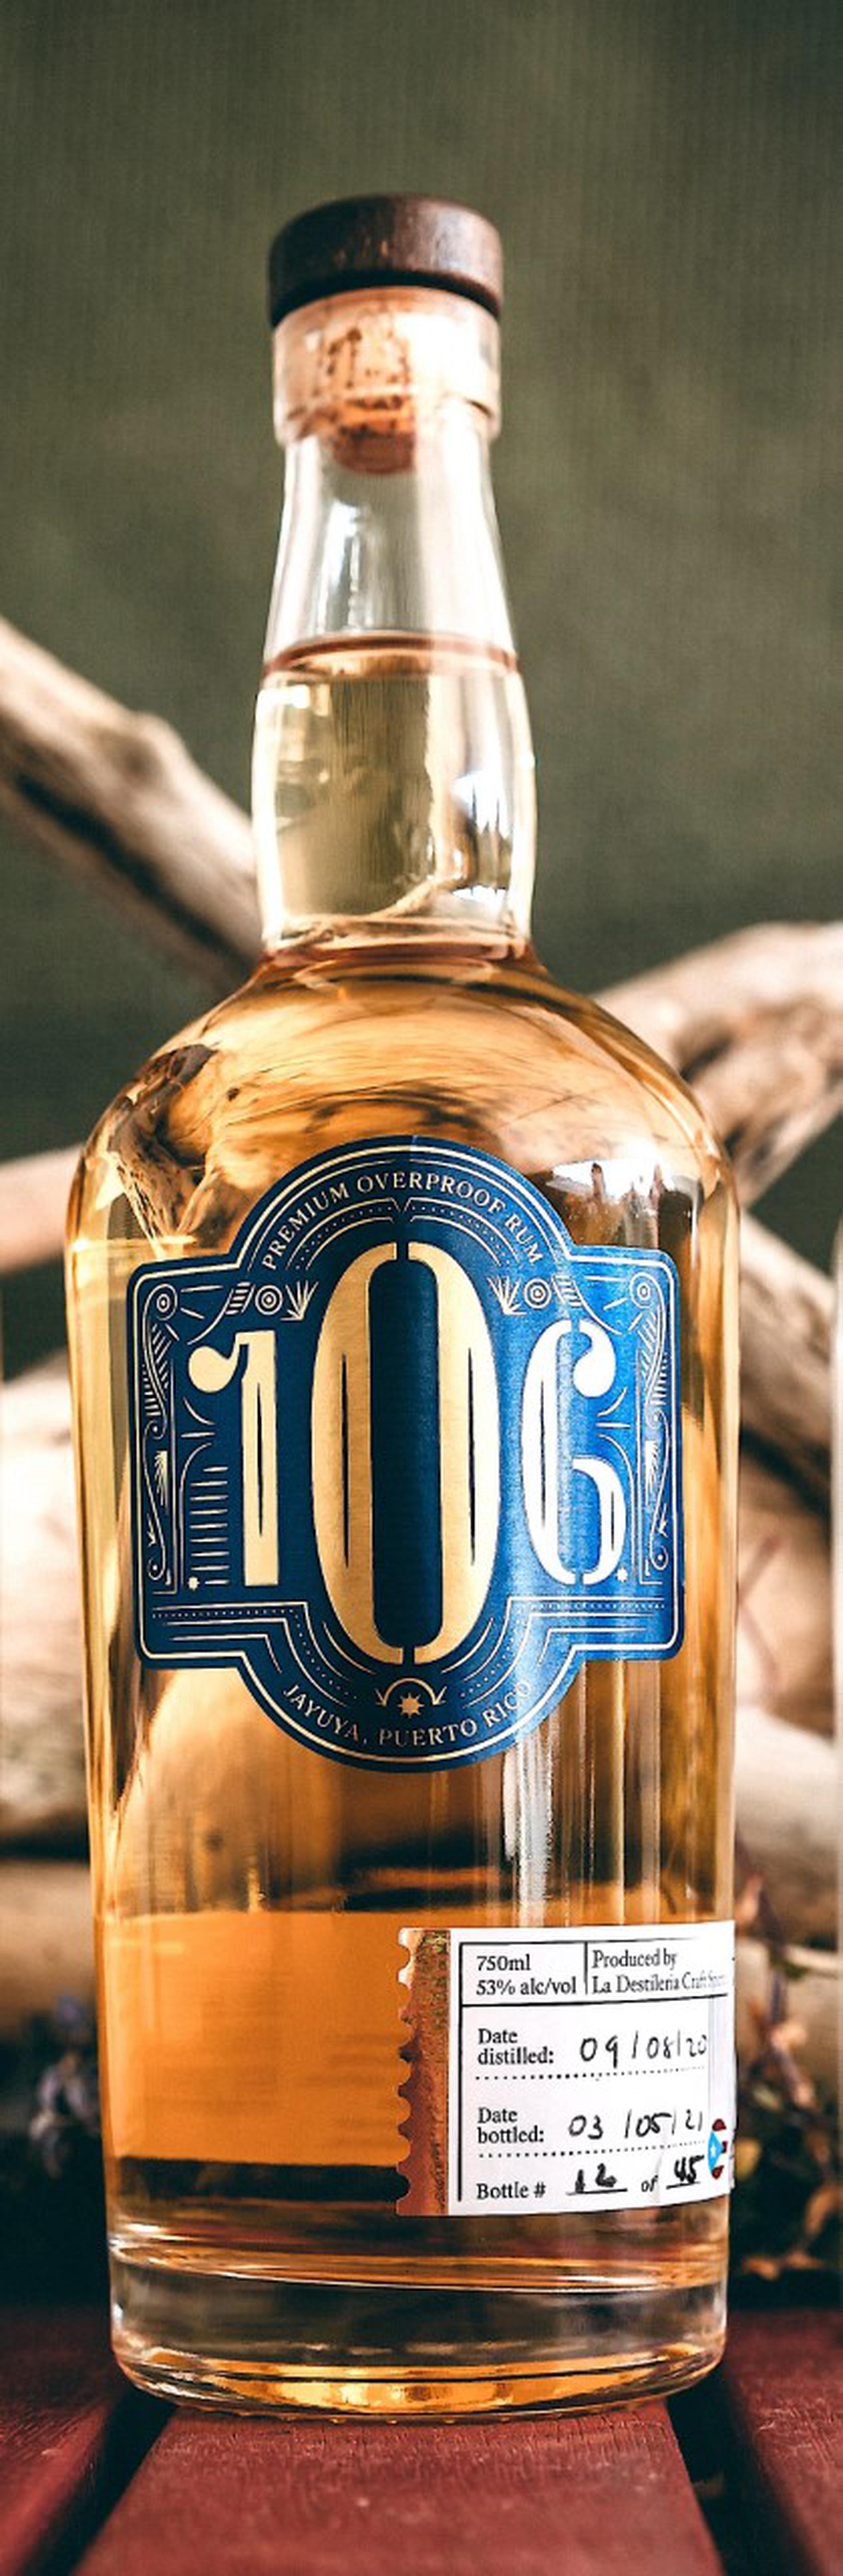 “106 Overproof Rum”